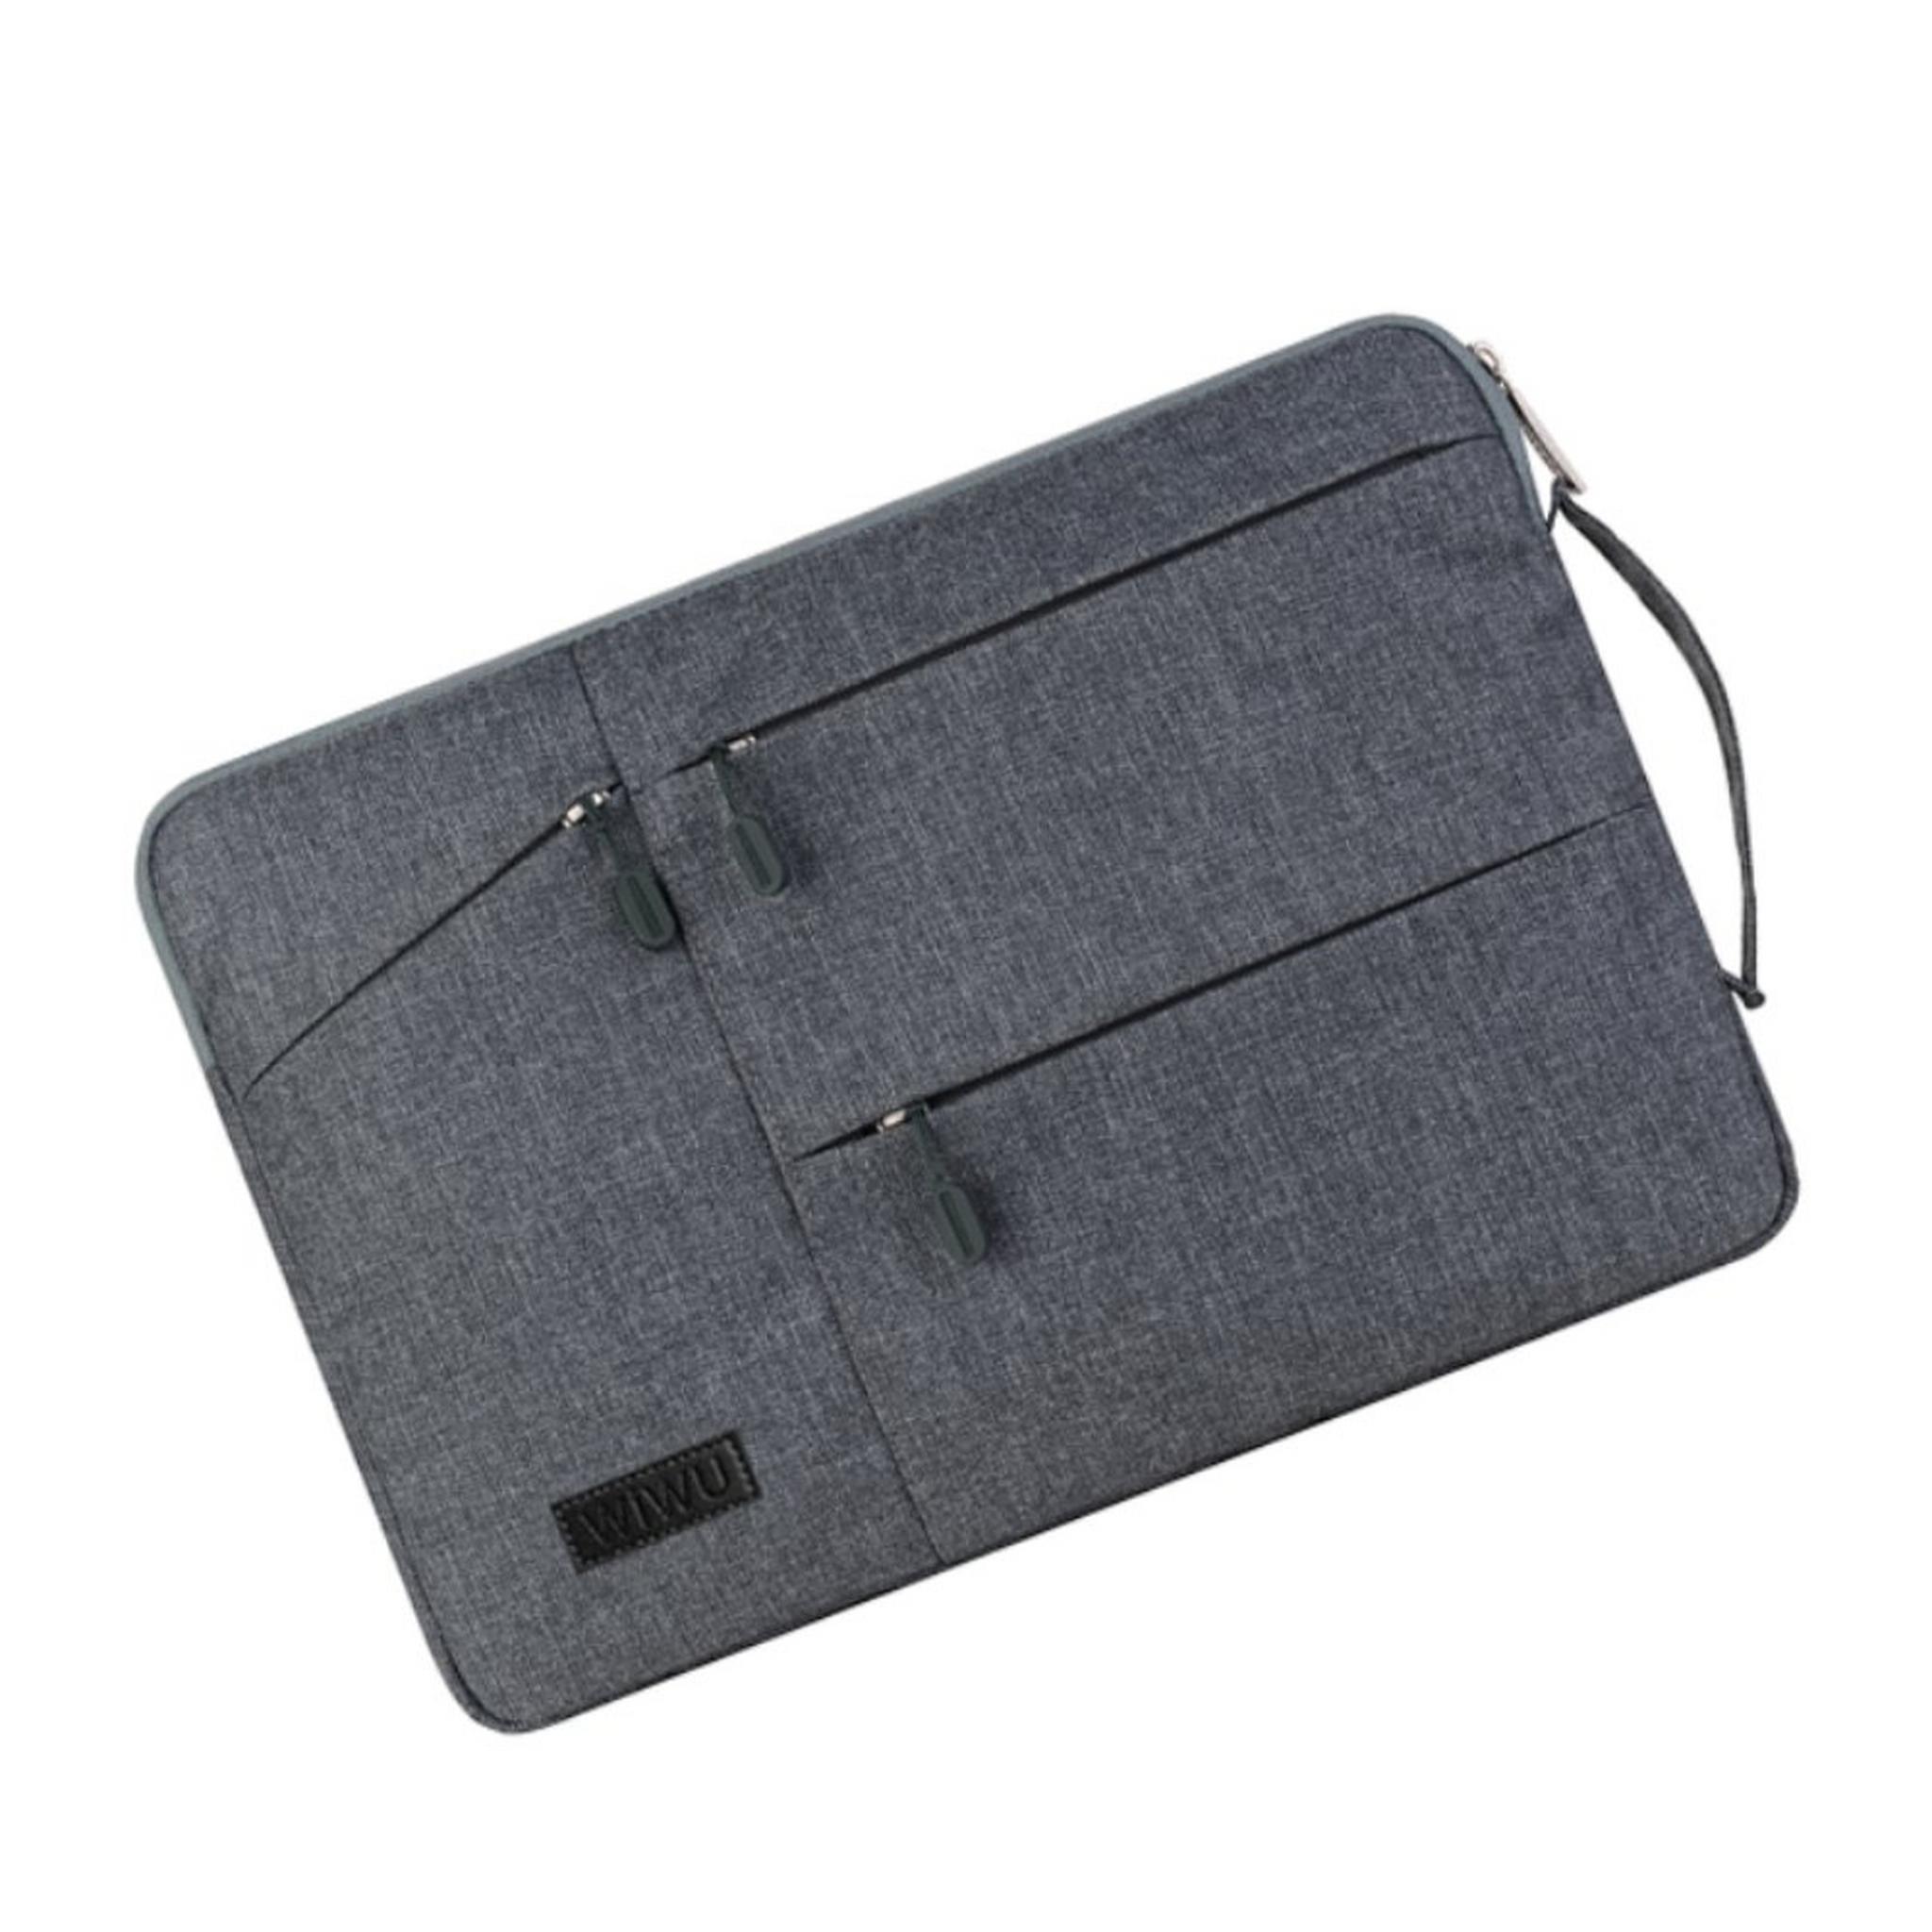 حقيبة بوكيت للابتوب بحجم 15.4 بوصة من ويو - رمادي